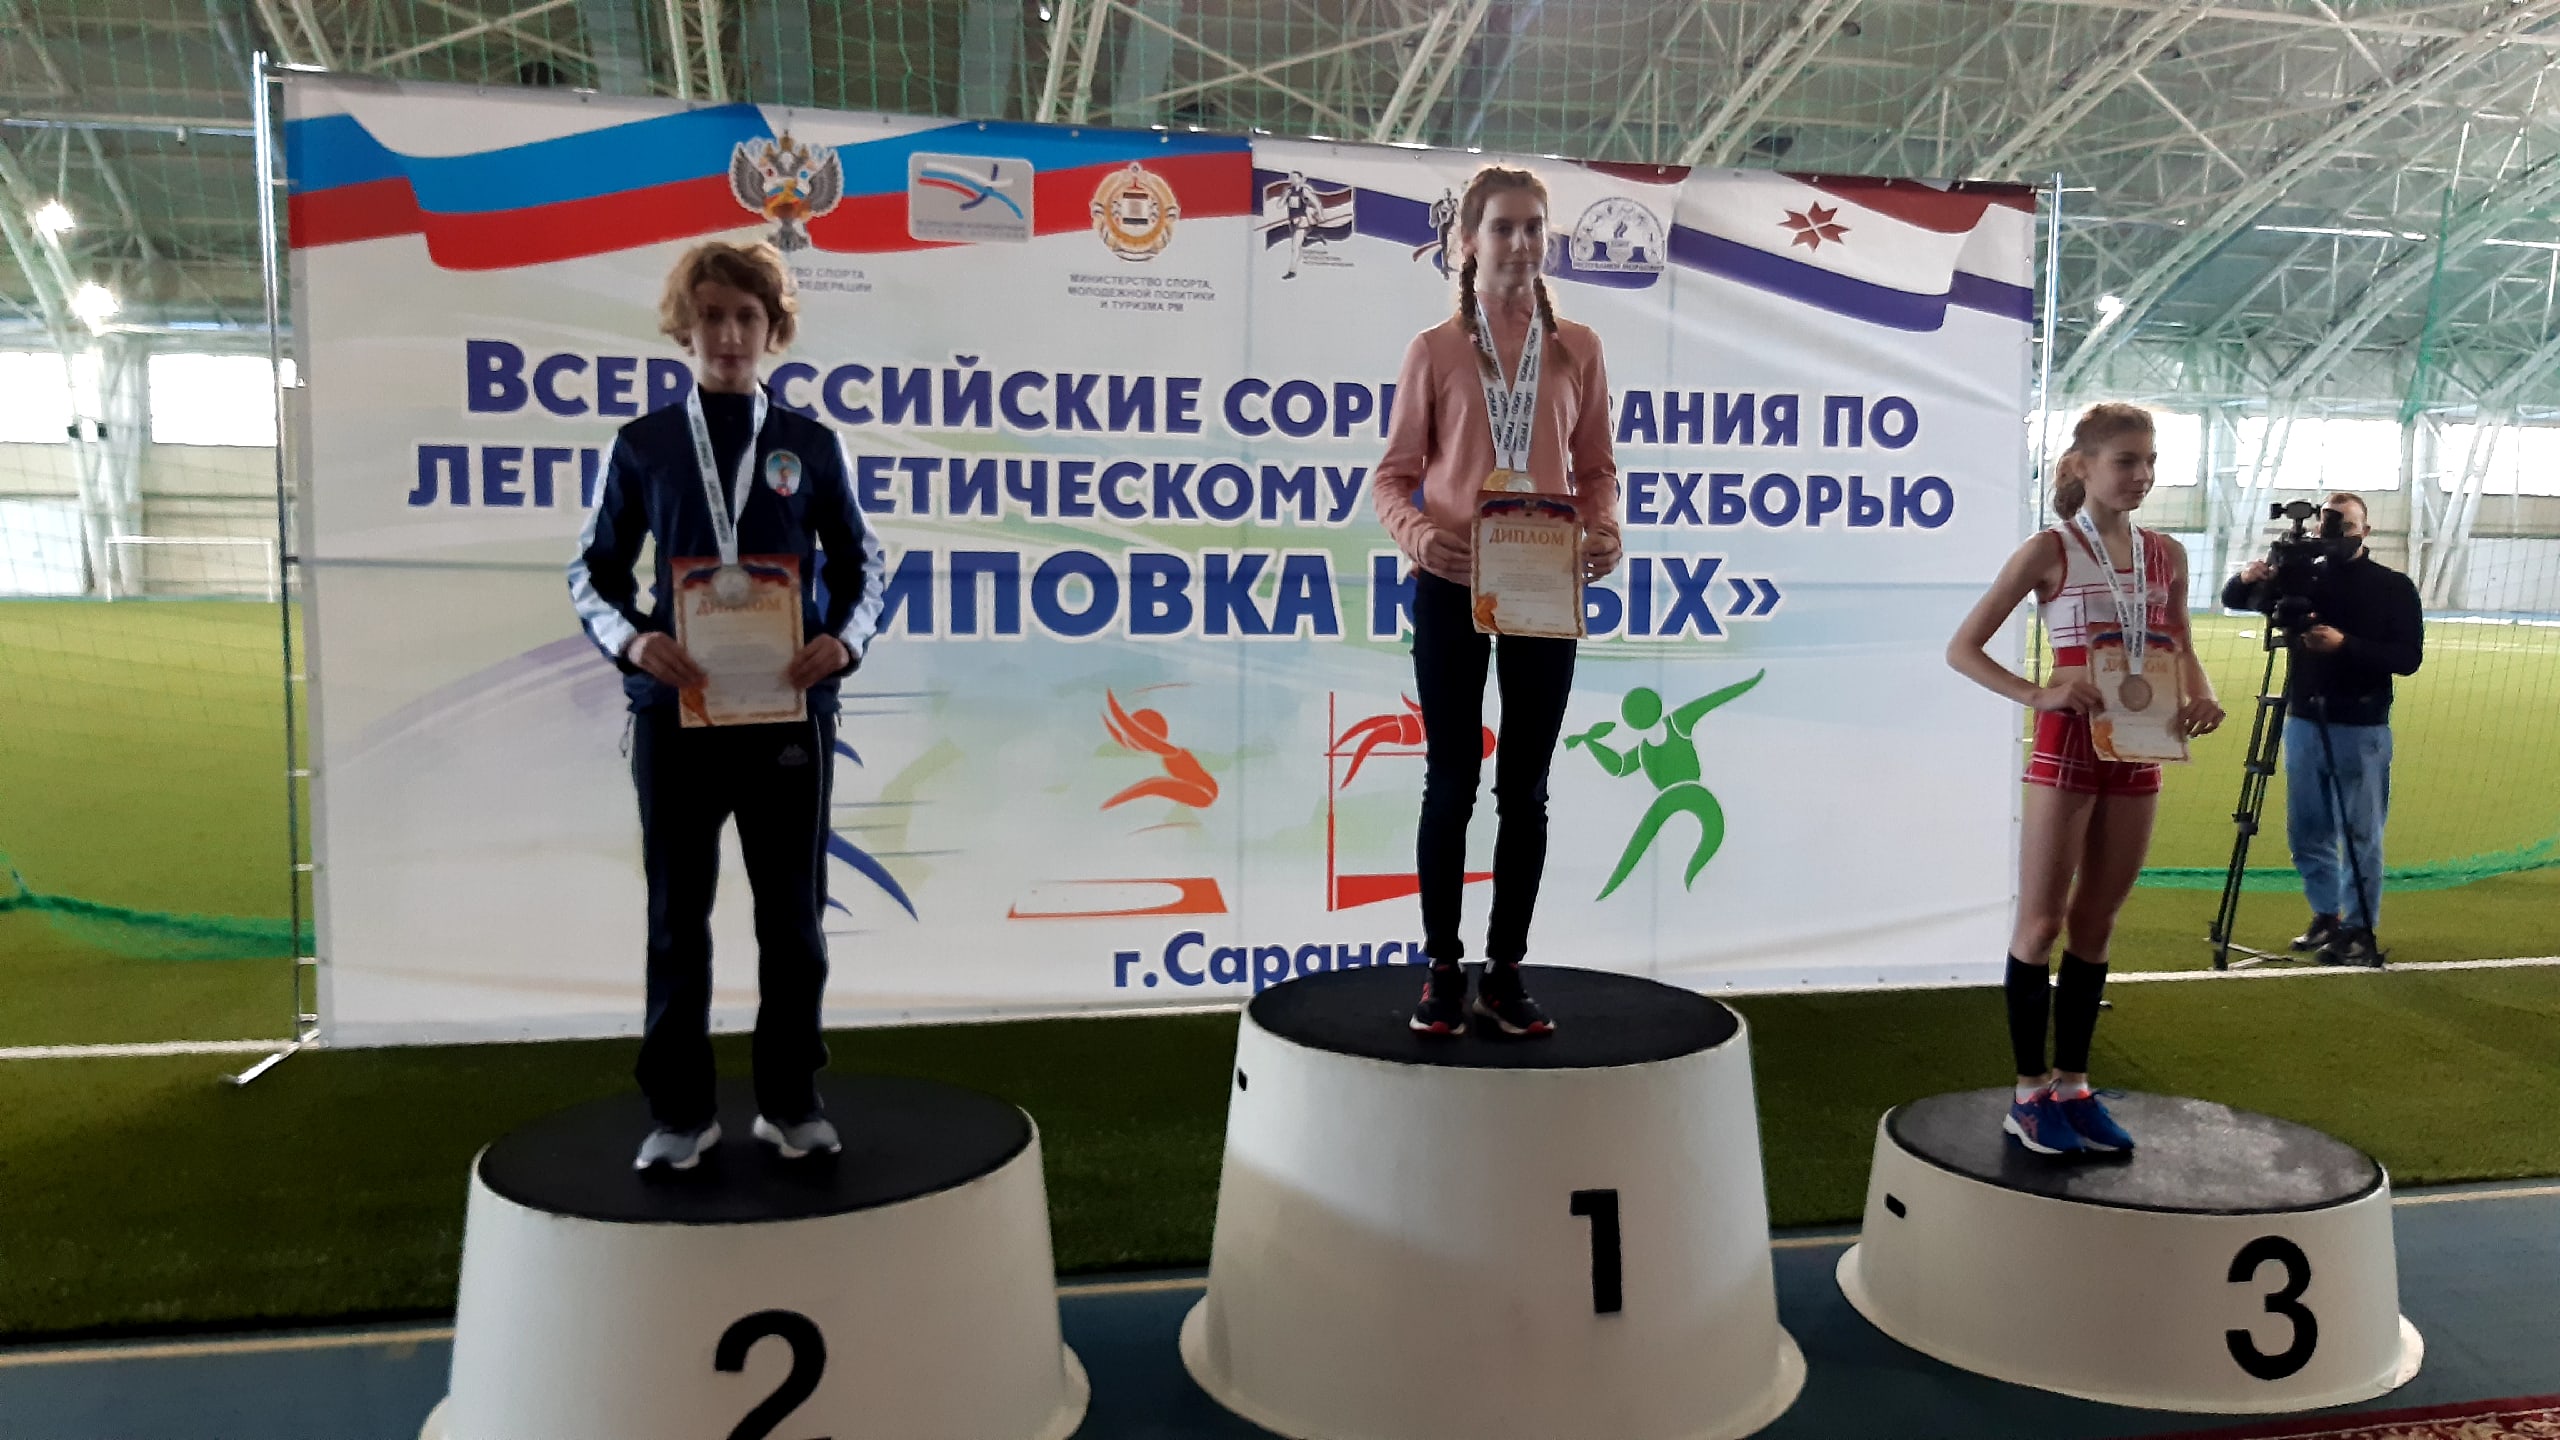 Поздравляем Алёну Елисееву со 2 местом в беге на 600 метров, и выполнением норматива по 1 спортивному разряду, на Всероссийских соревнованиях по легкоатлетическому четырехборью «Шиповка юных», которые прошли 24-25 марта в городе Саранске!